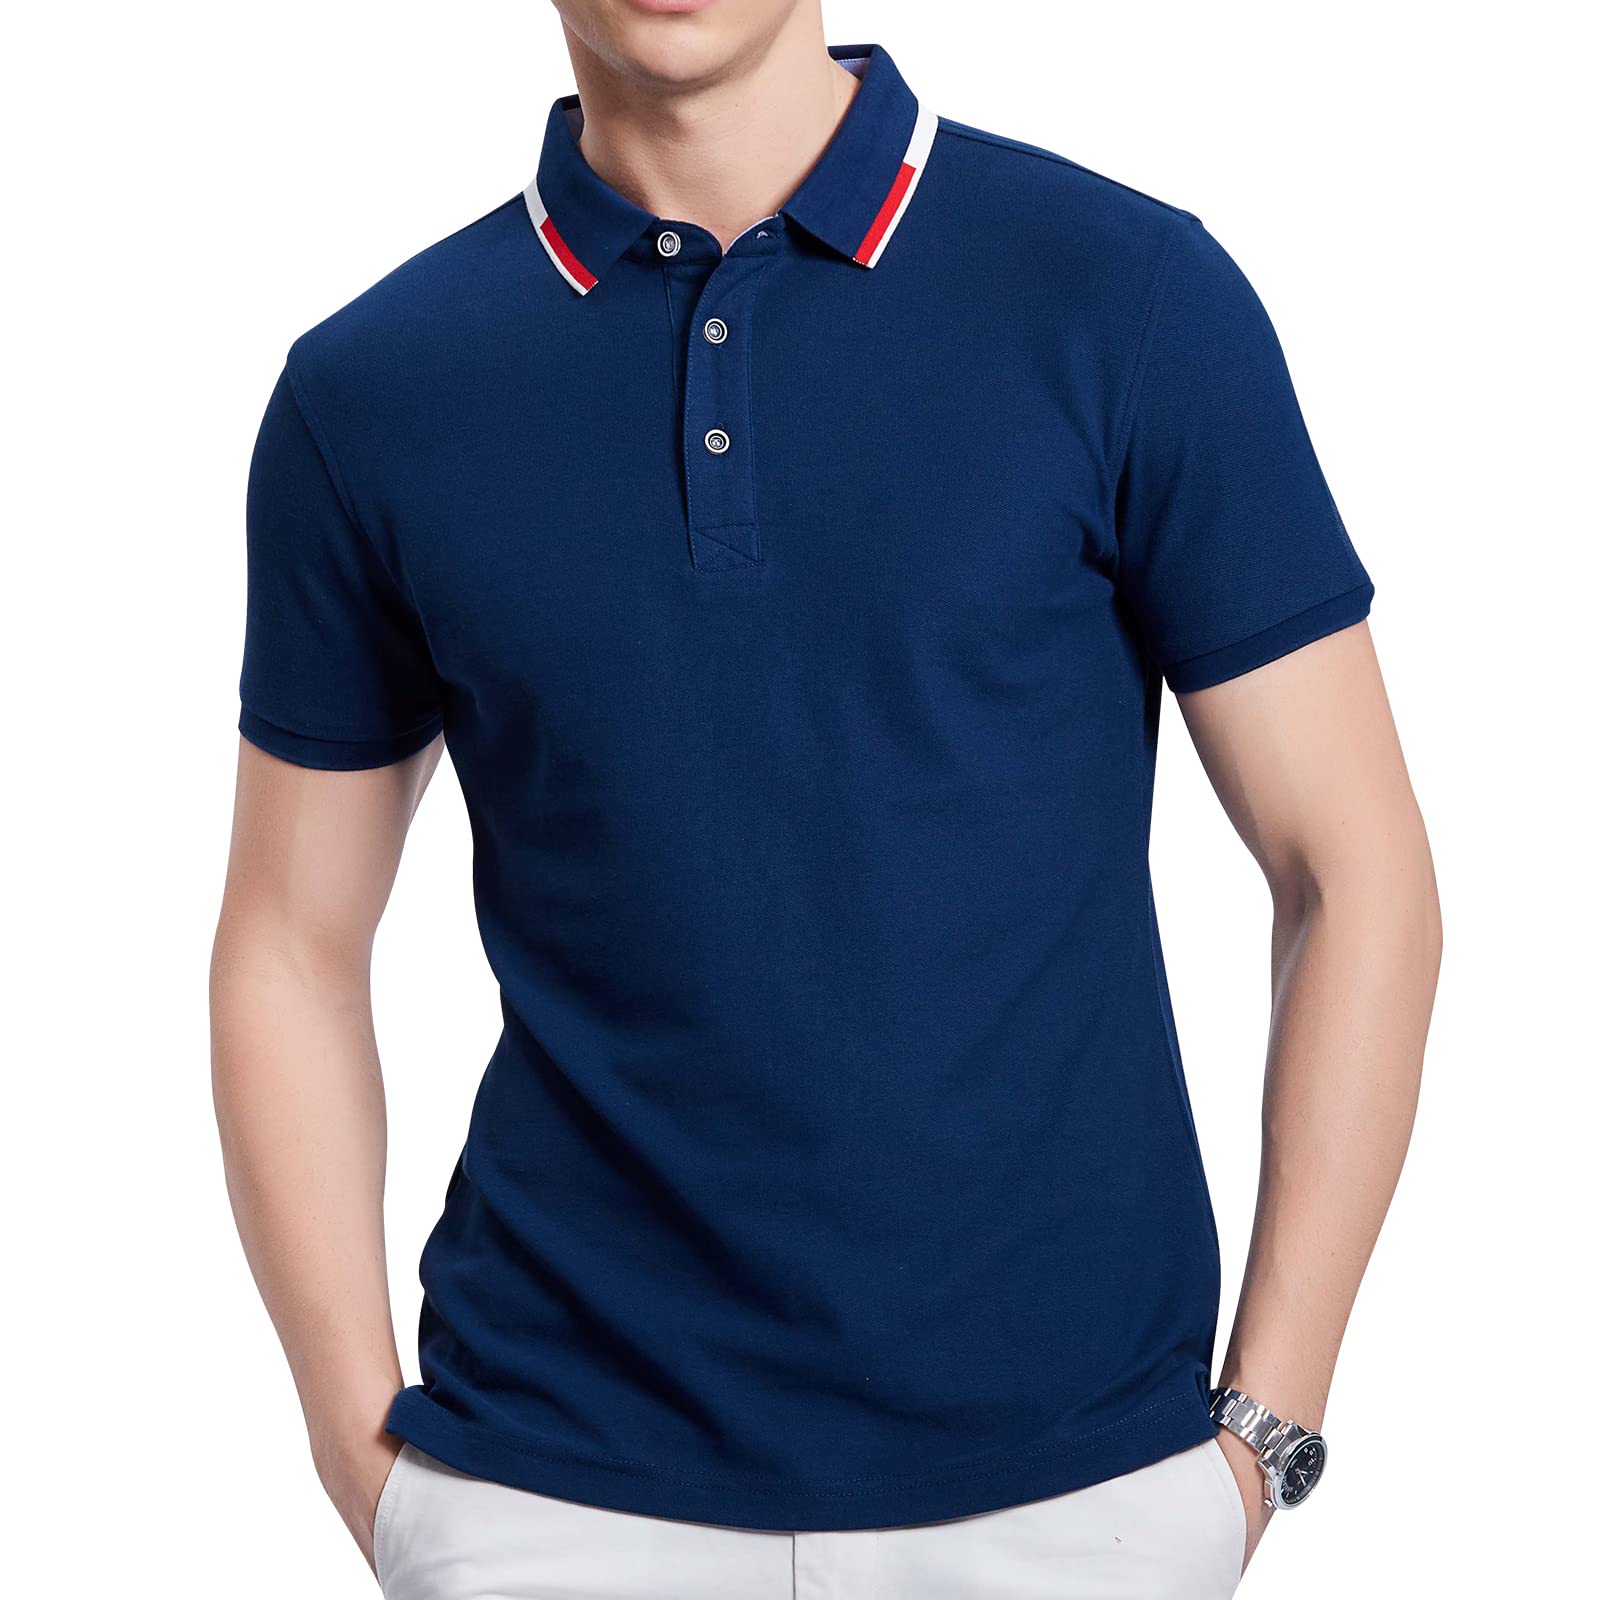 Mua ZWGOOO Men's Advantage Performance Short Sleeve Solid Polo Shirts  Casual Classic Fit Fashion Cotton Shirt trên Amazon Mỹ chính hãng 2023  Giaonhan247